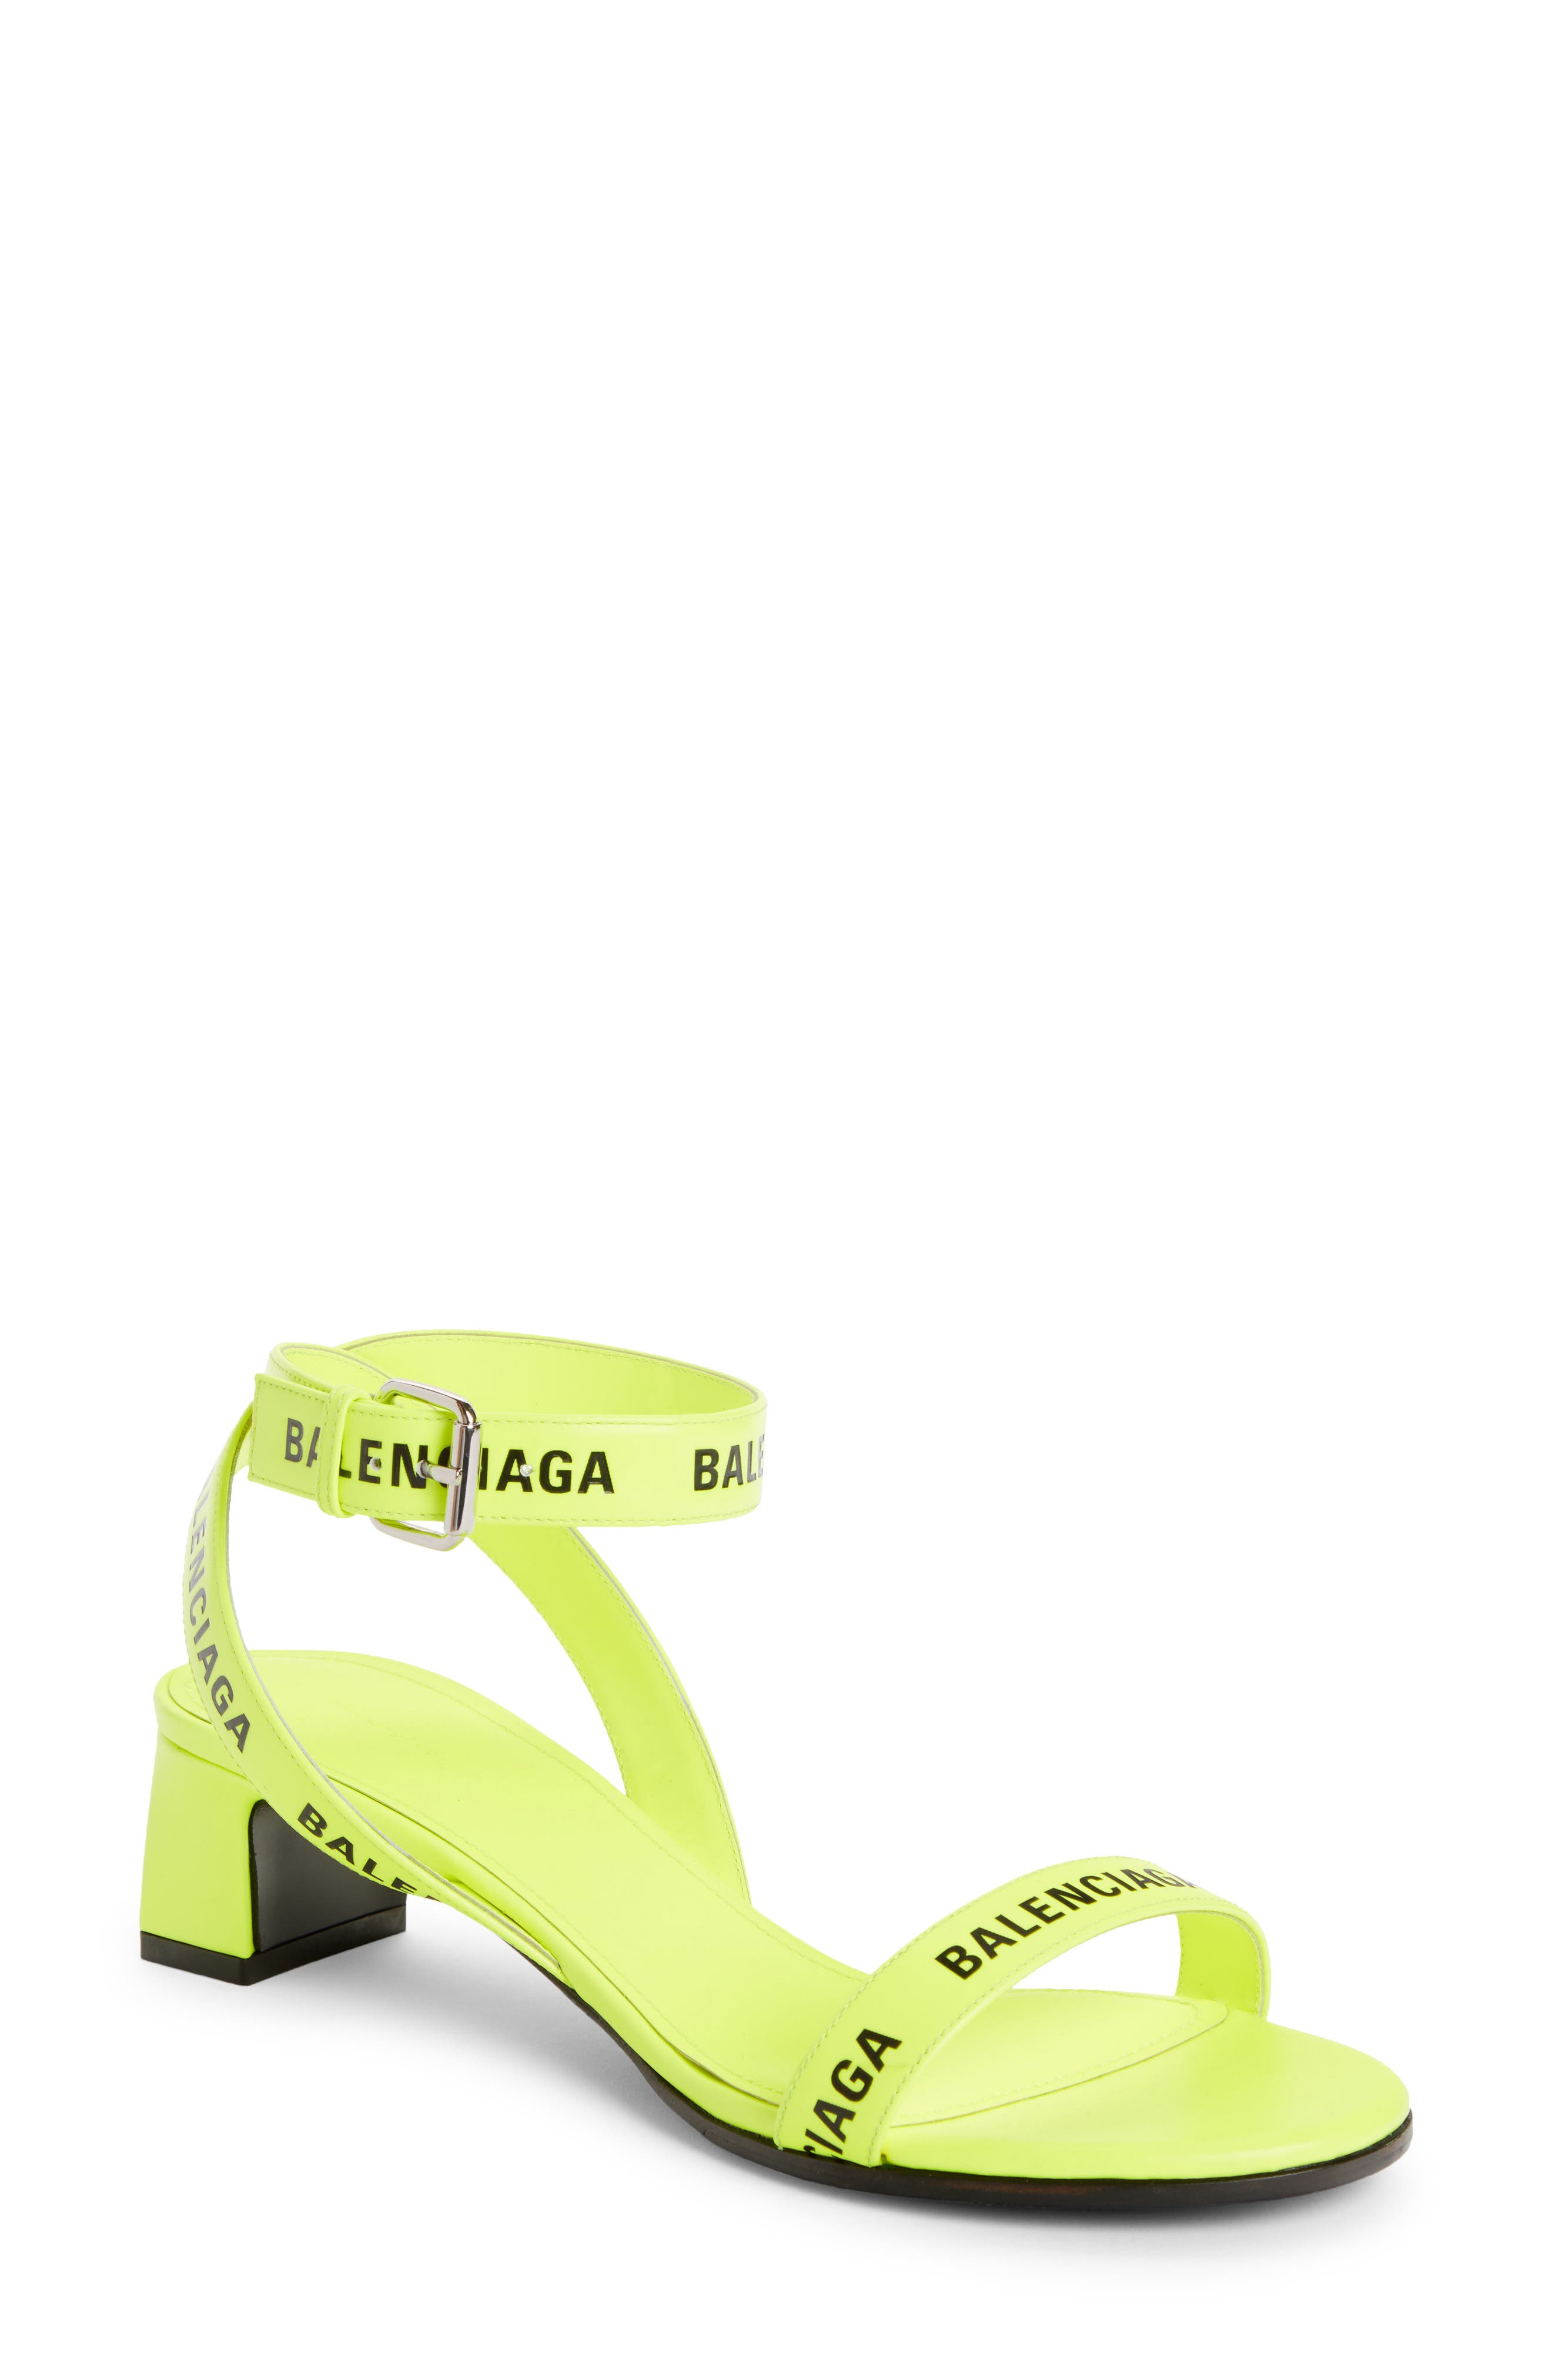 balenciaga neon yellow sandals